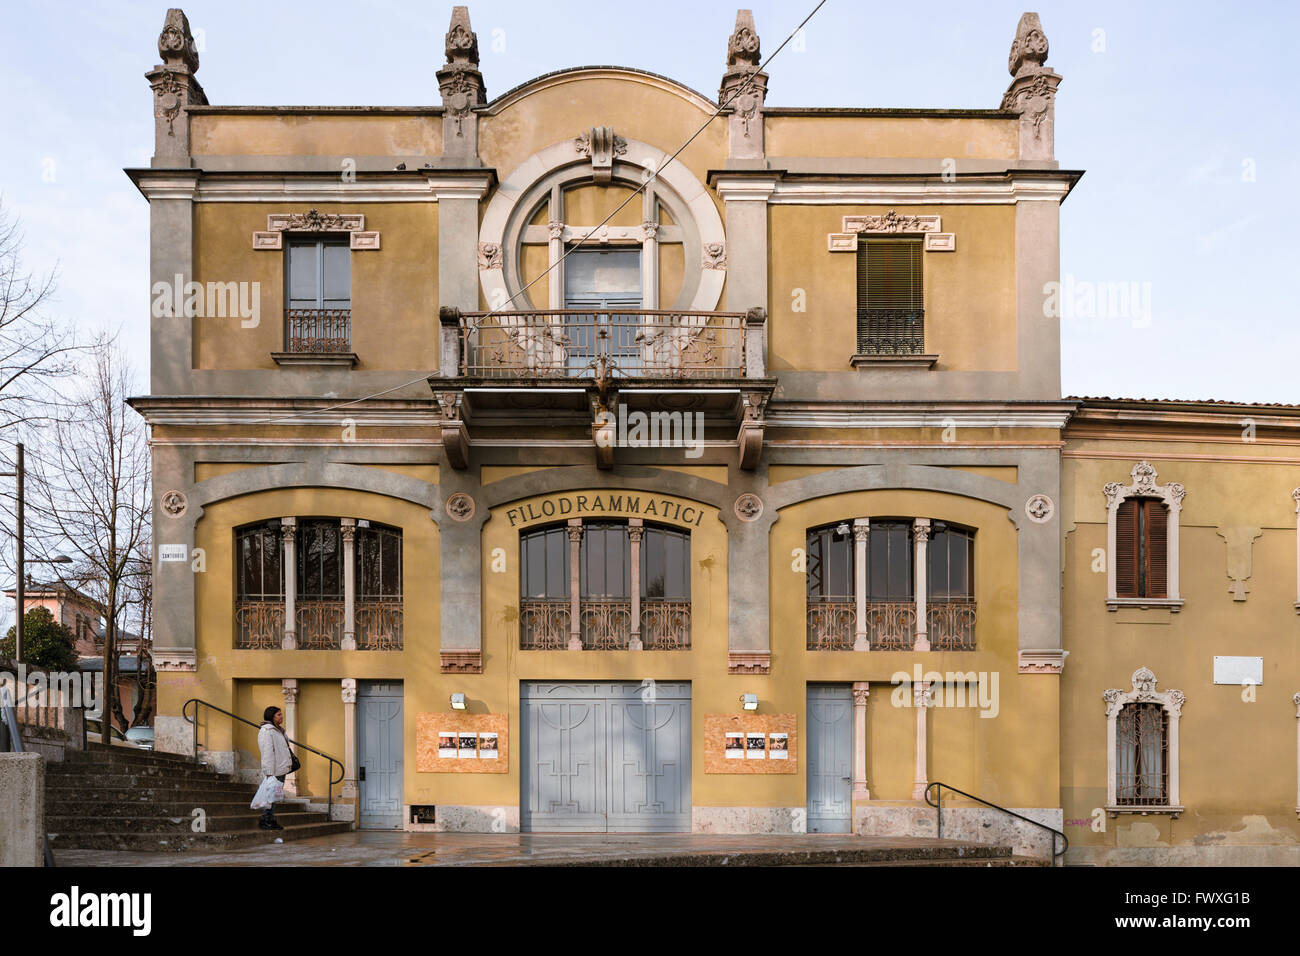 The Teatro Filodrammatici in Treviglio, a Stile Liberty (Art Nouveau) theatre of 1905 designed by Carlo Bedolini. Stock Photo